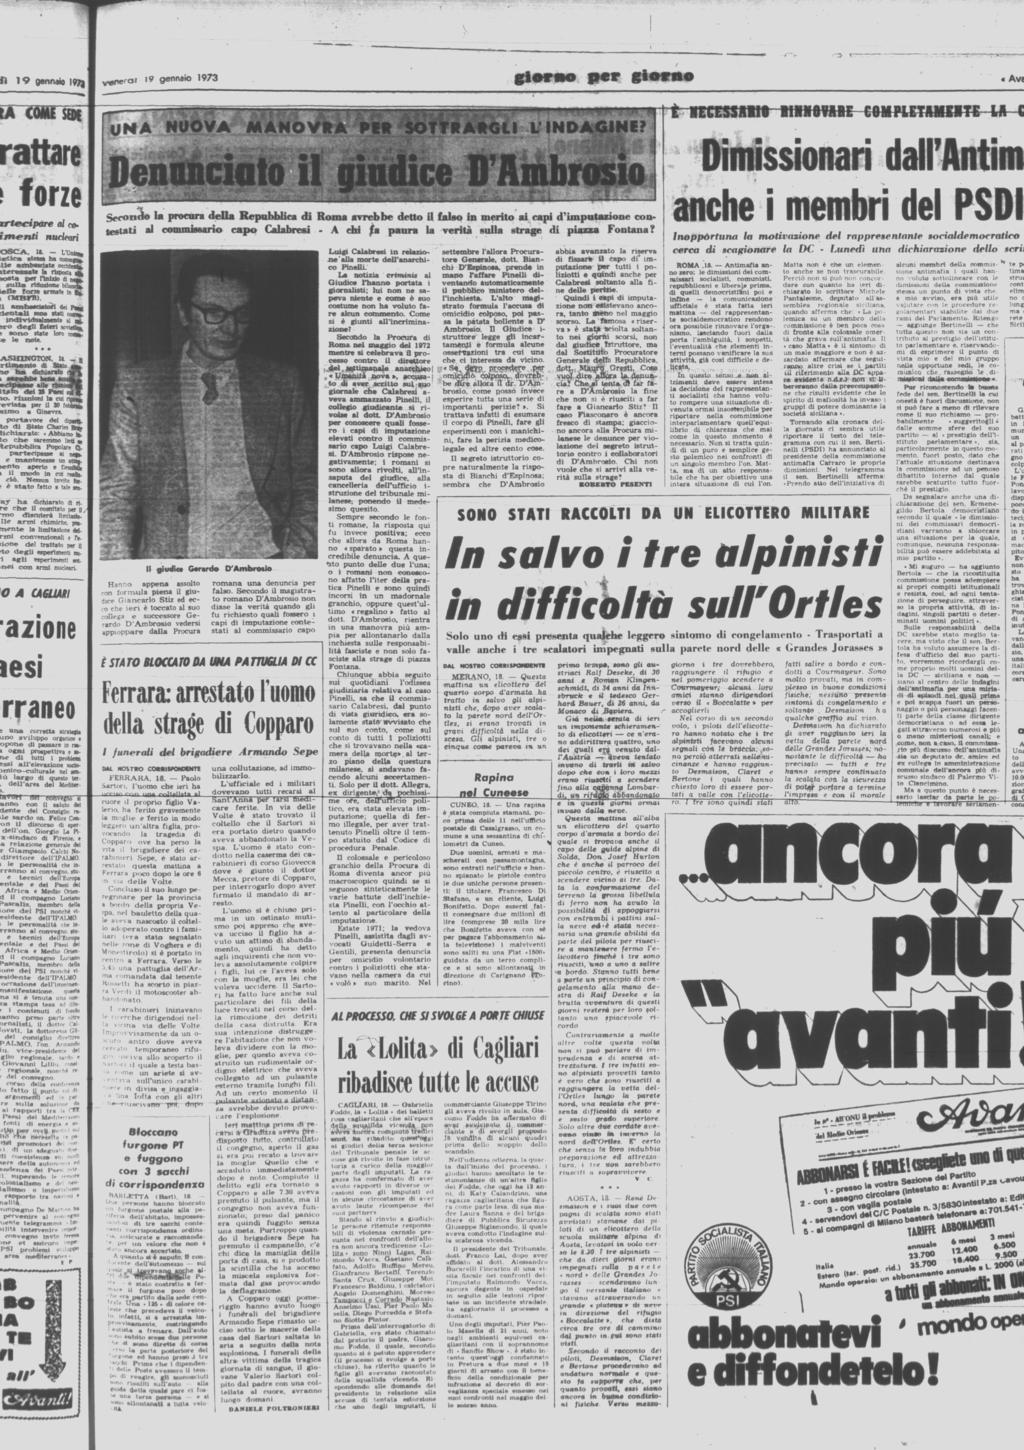 Nel dicembre 1974 la Corte di Cassazione spostò il processo da Milano a Catanzaro, togliendogli l inchiesta.